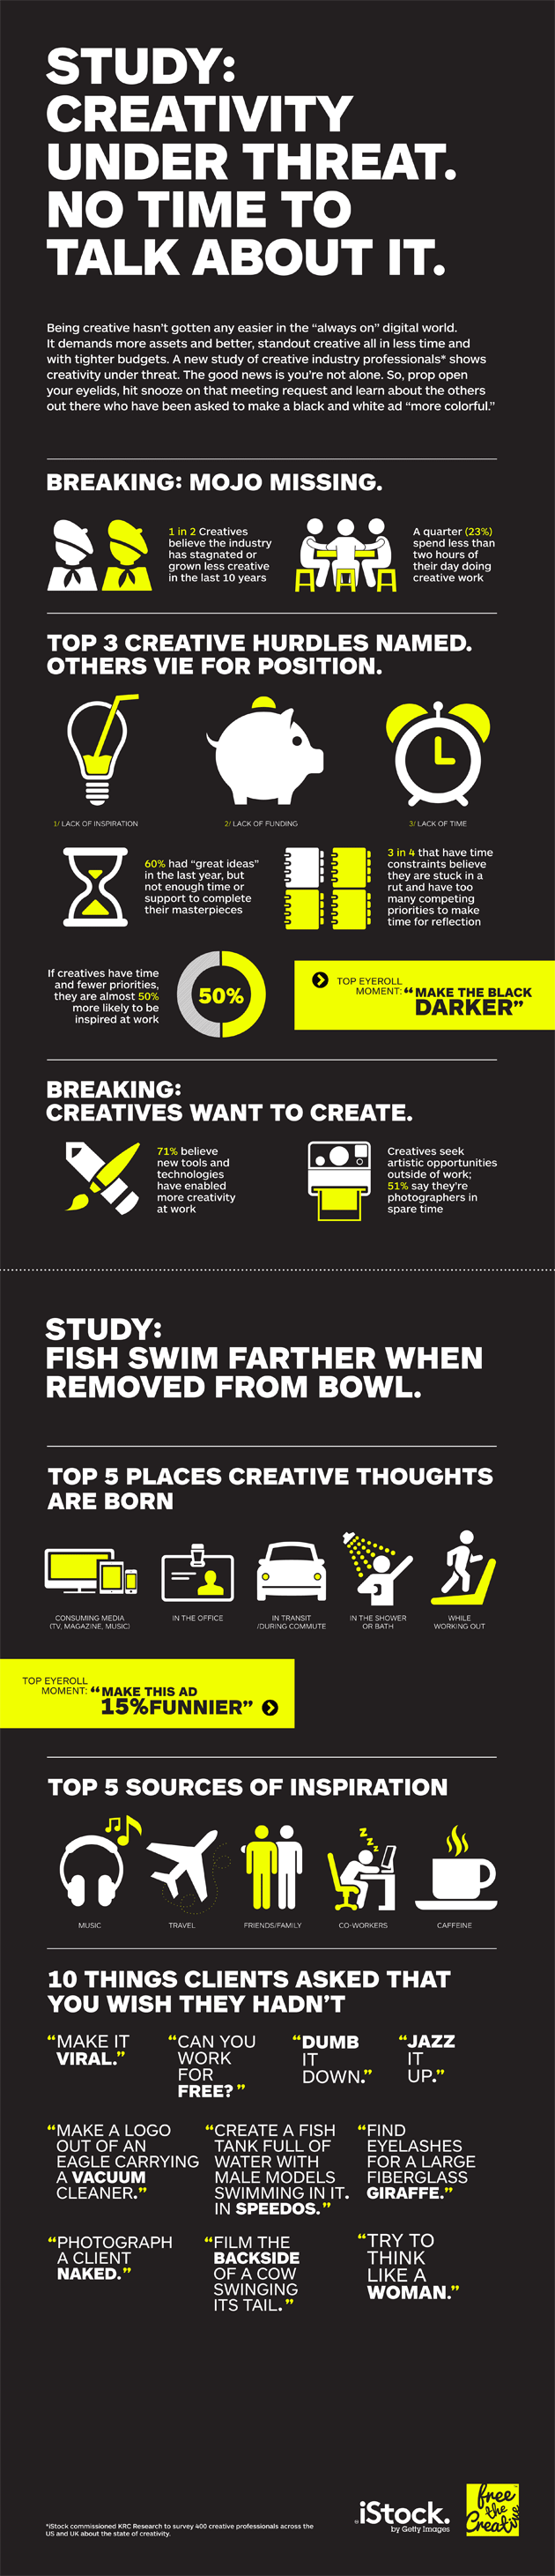 infographic istock creativity